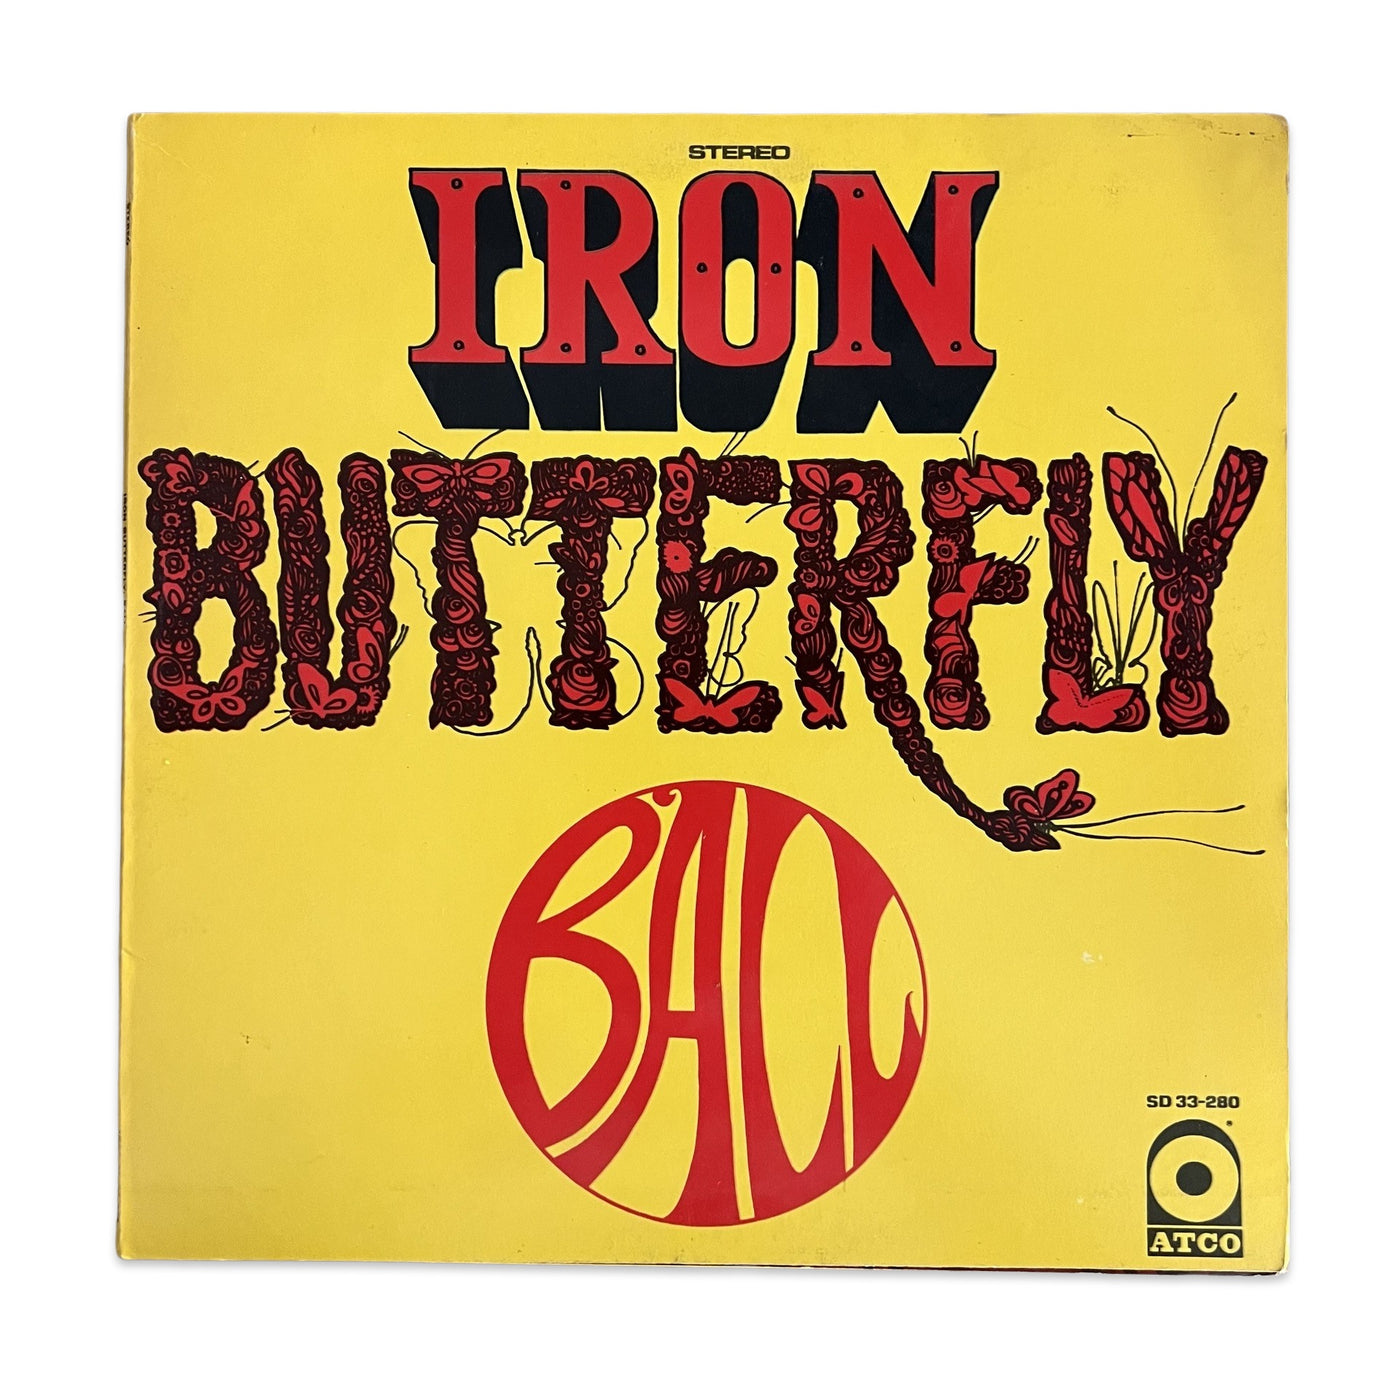 Iron Butterfly – Ball